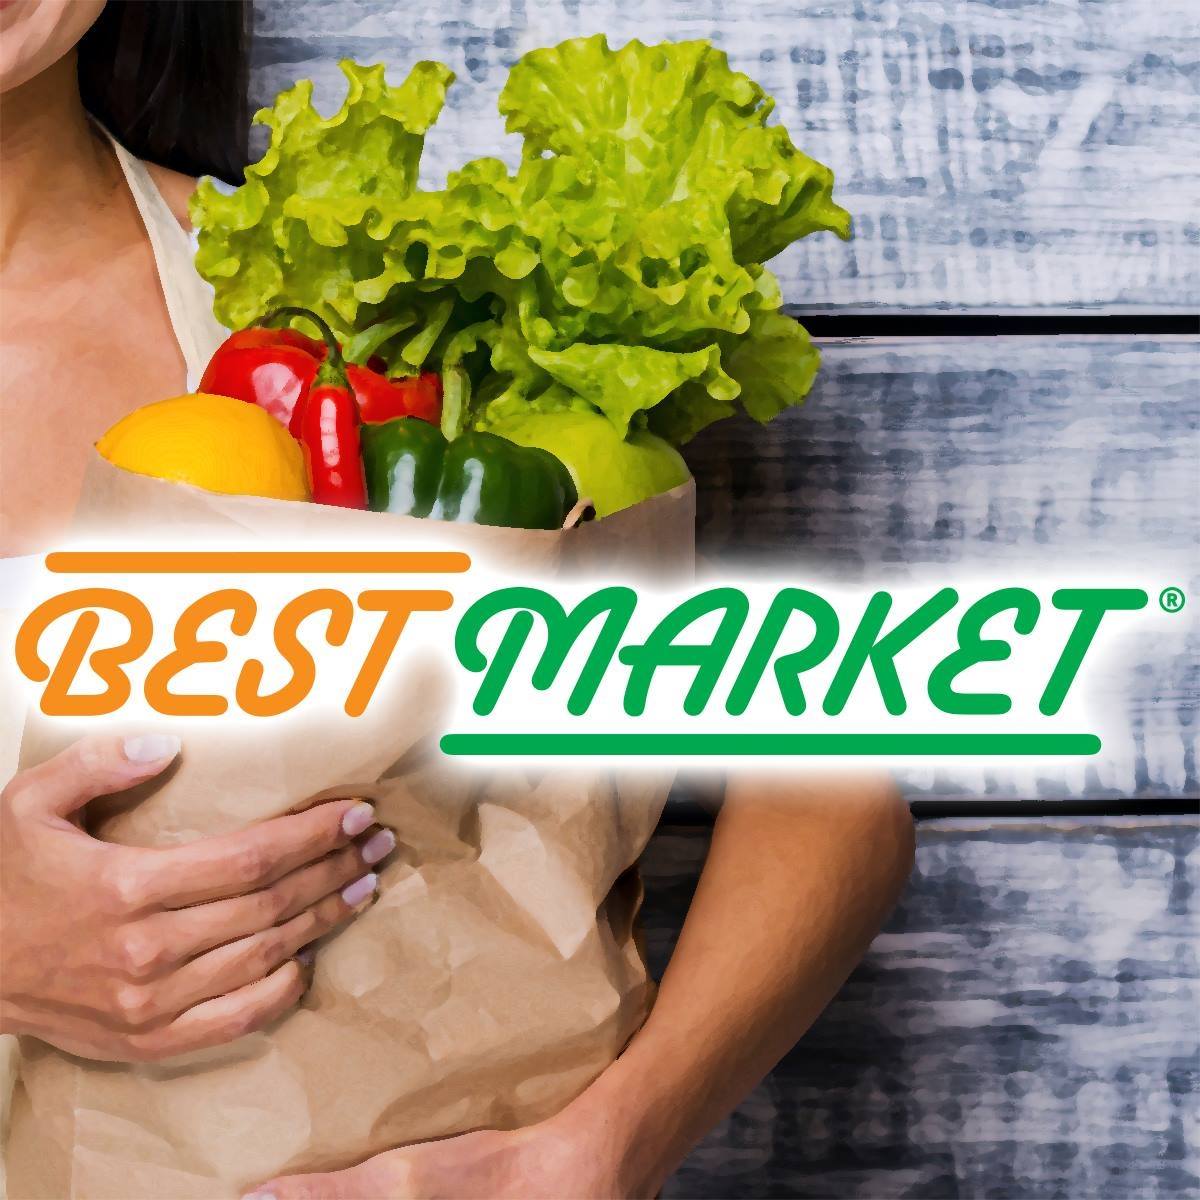 Best Market Blog, Facebook, Instagram and Email Marketing by Katie Calleo / Flanagan